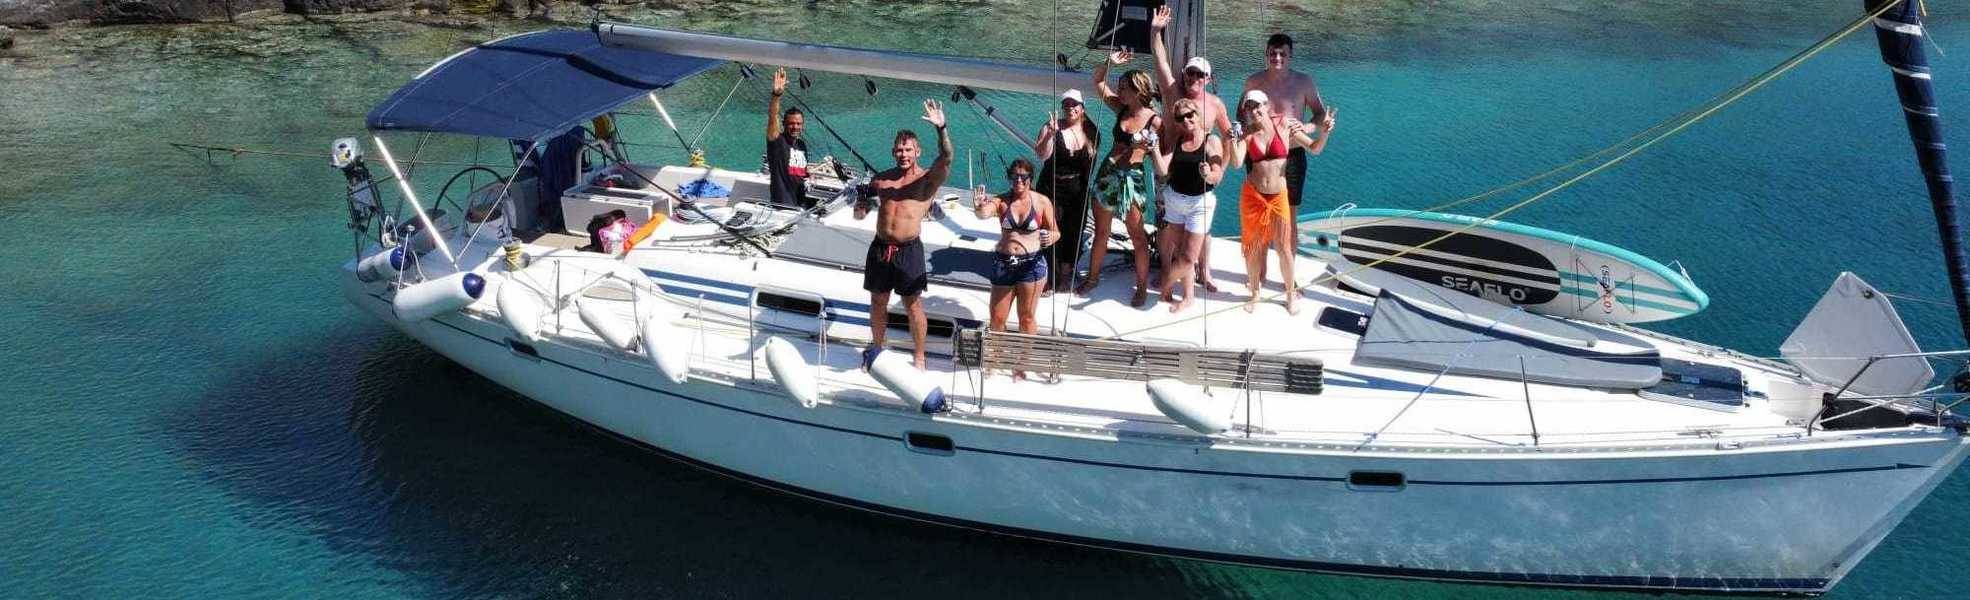 Volunteers auf einem Boot in Griechenland